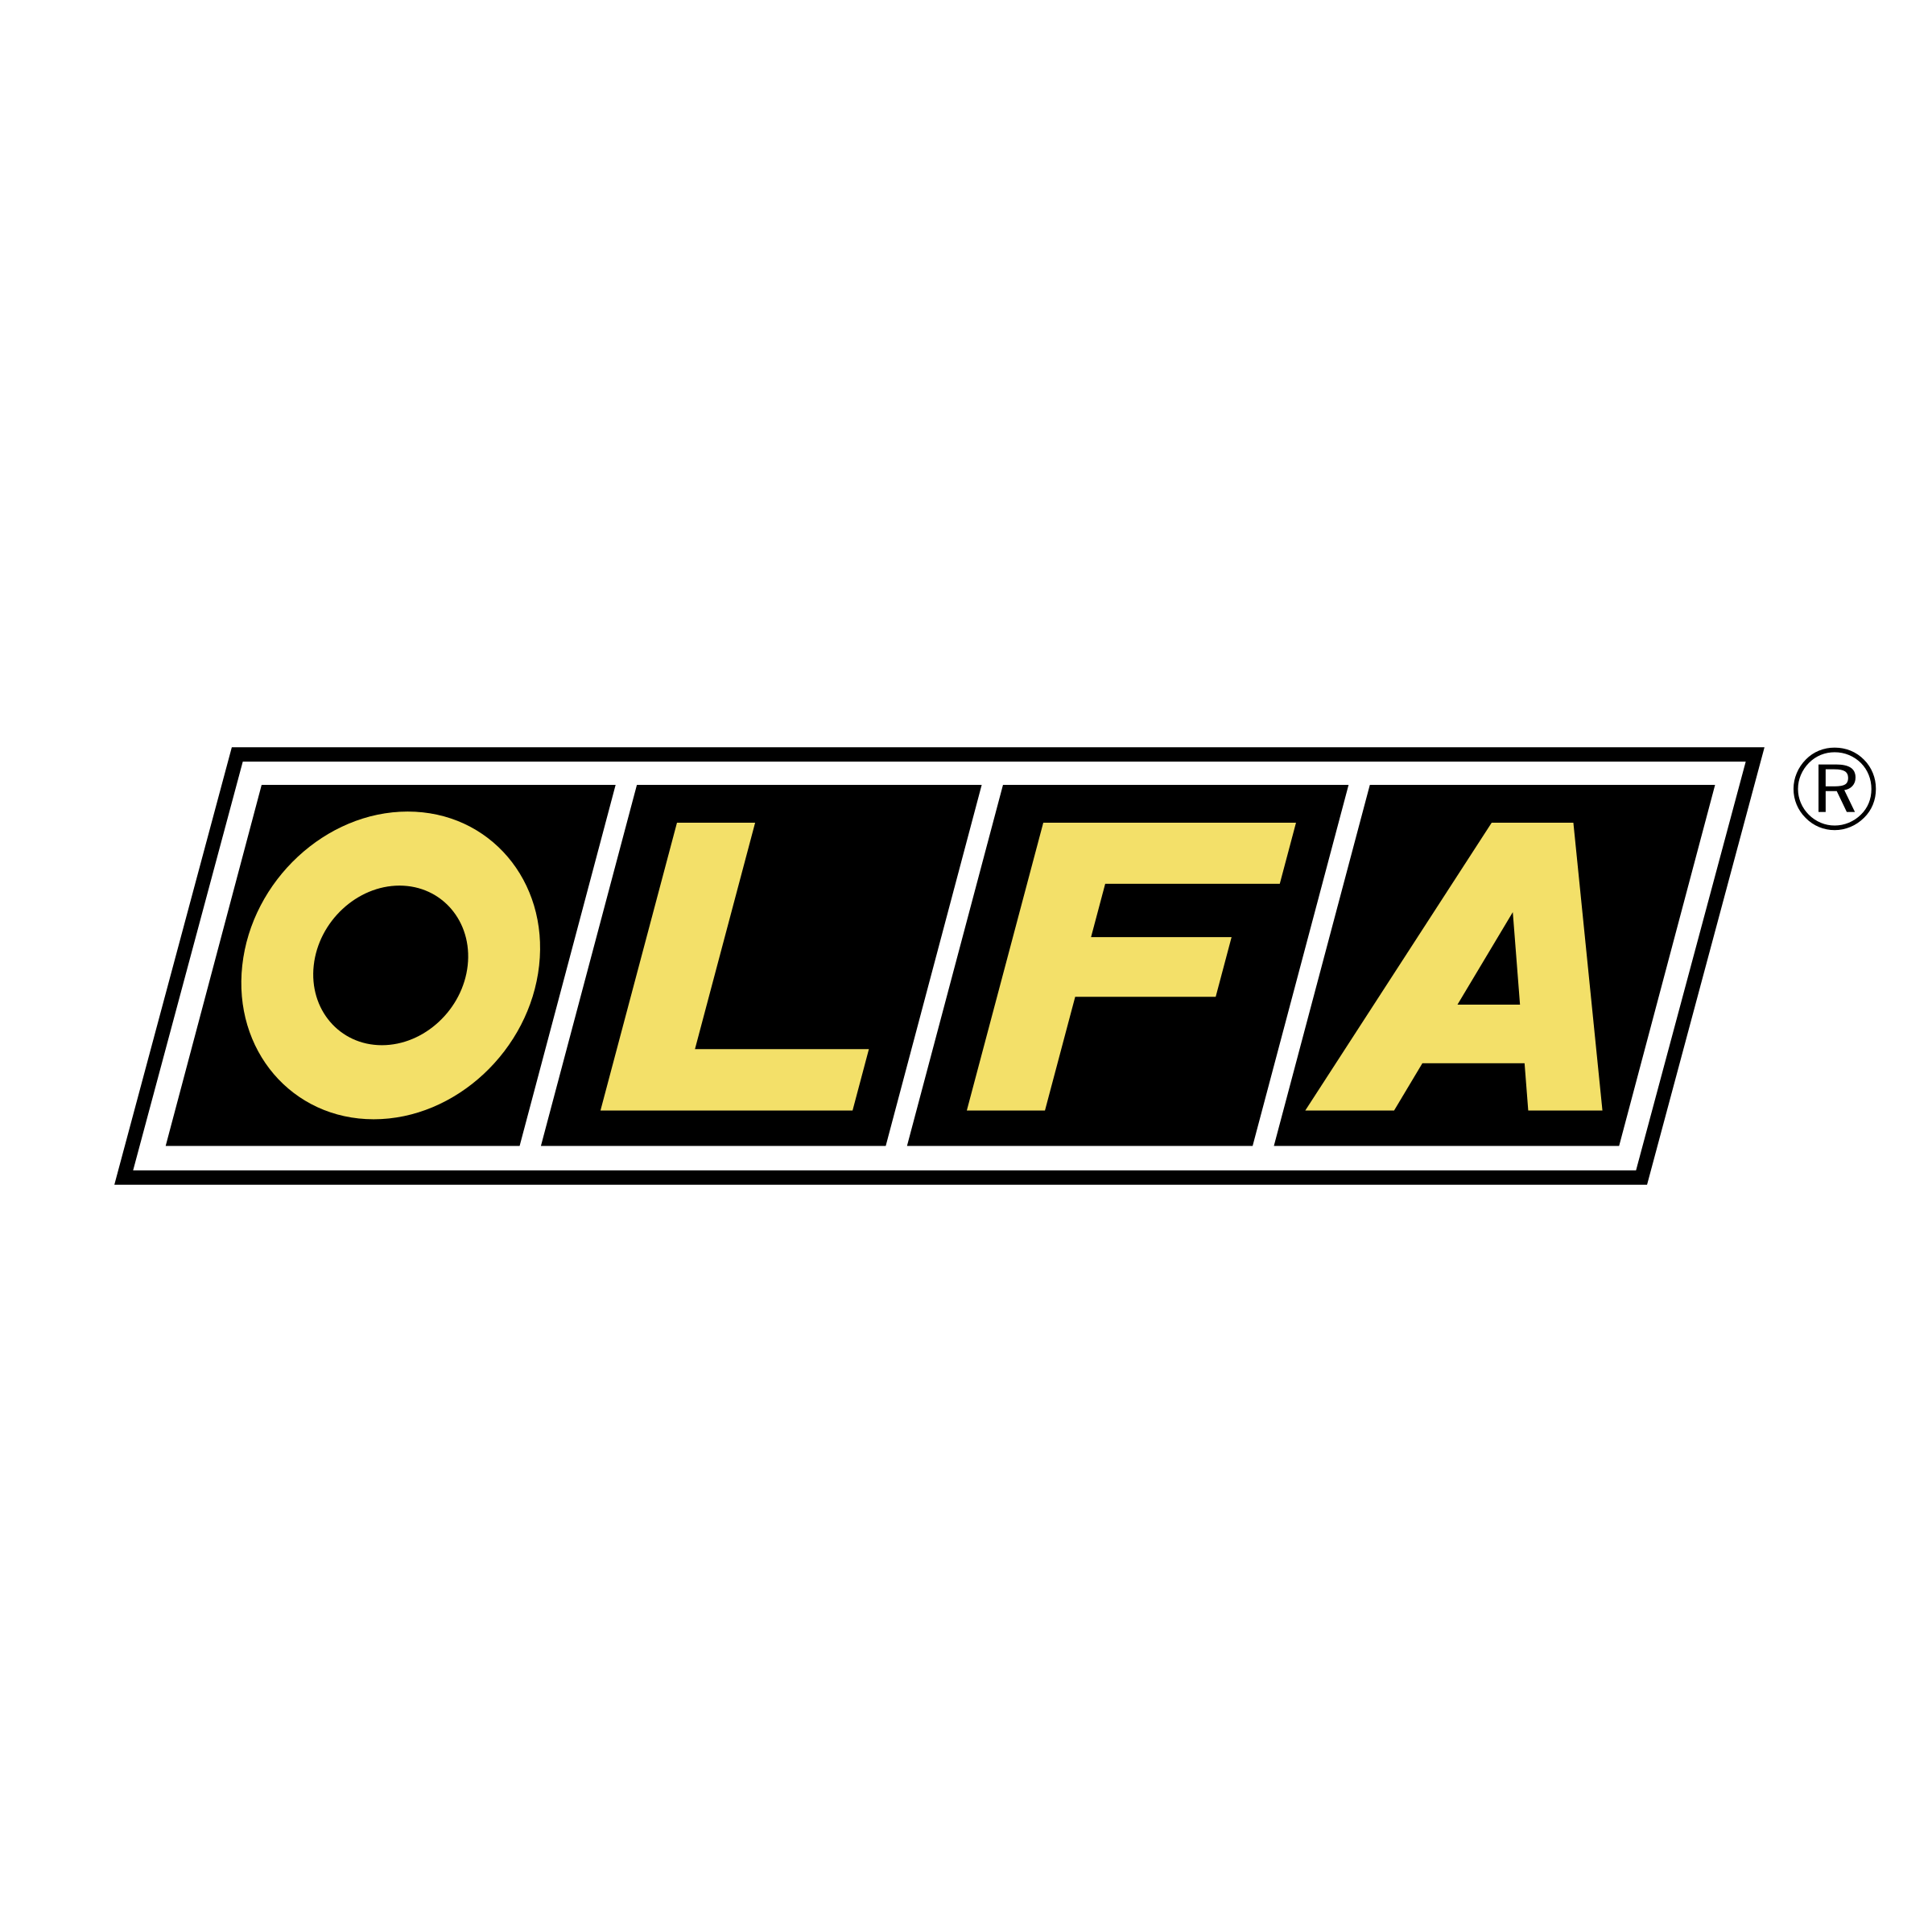 Olfa Logo - Olfa Logo PNG Transparent & SVG Vector